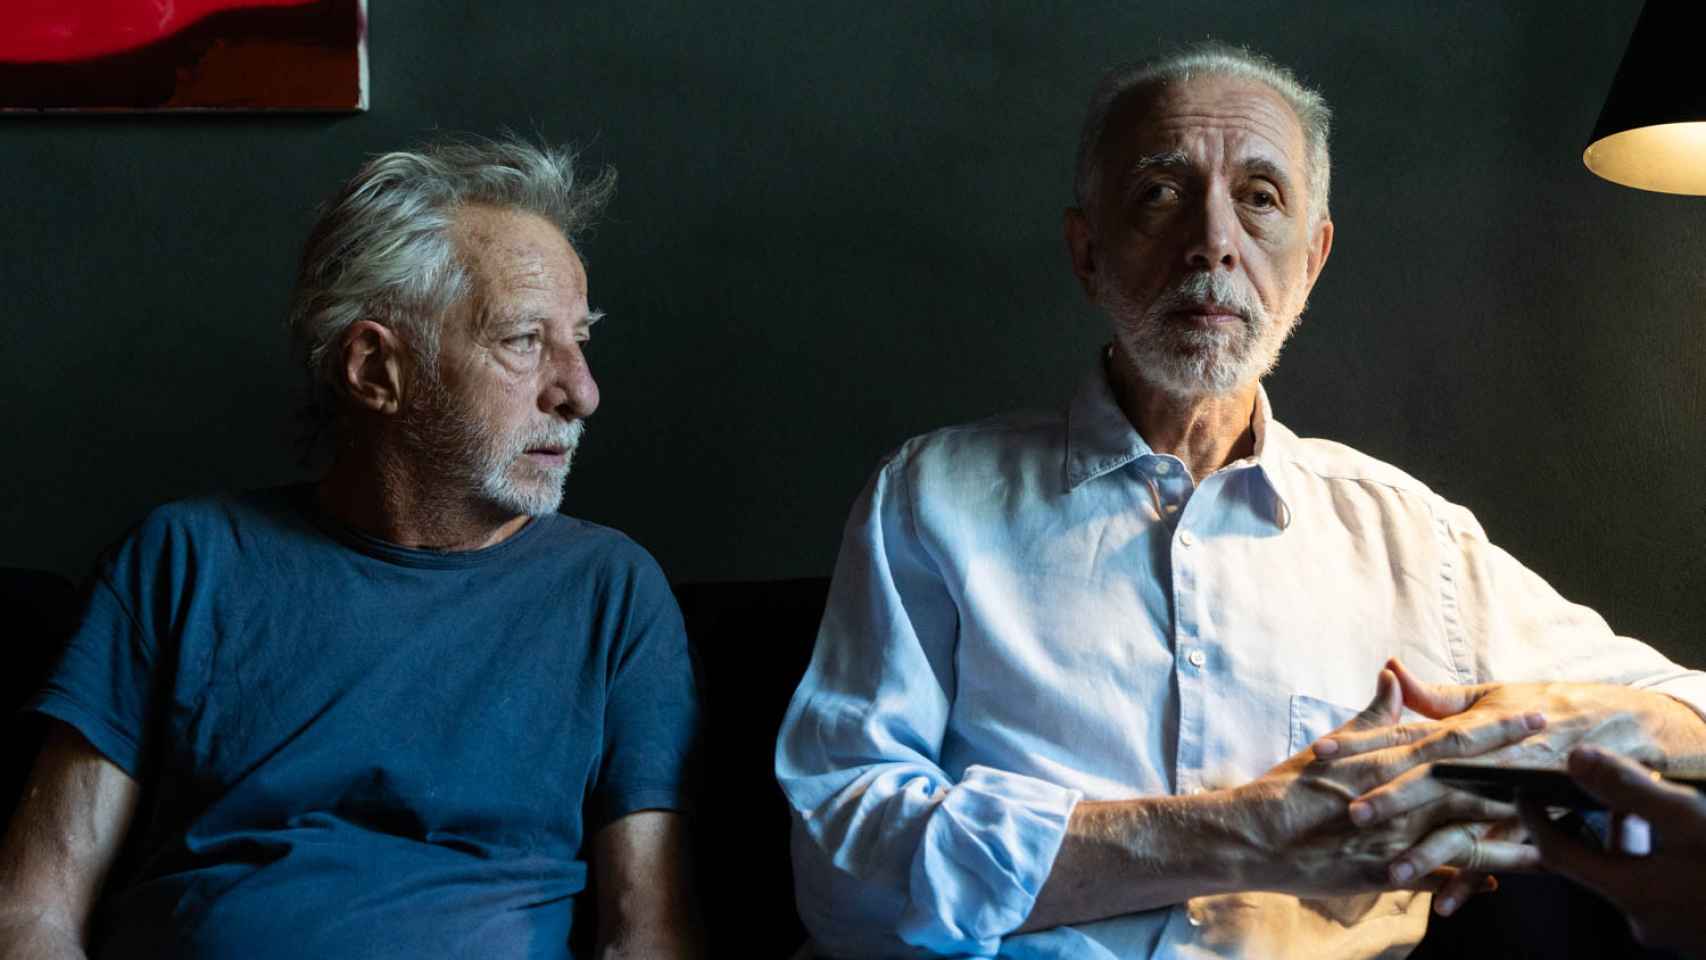 Fernando Trueba y Javier Mariscal, presentan su película dispararon al pianista